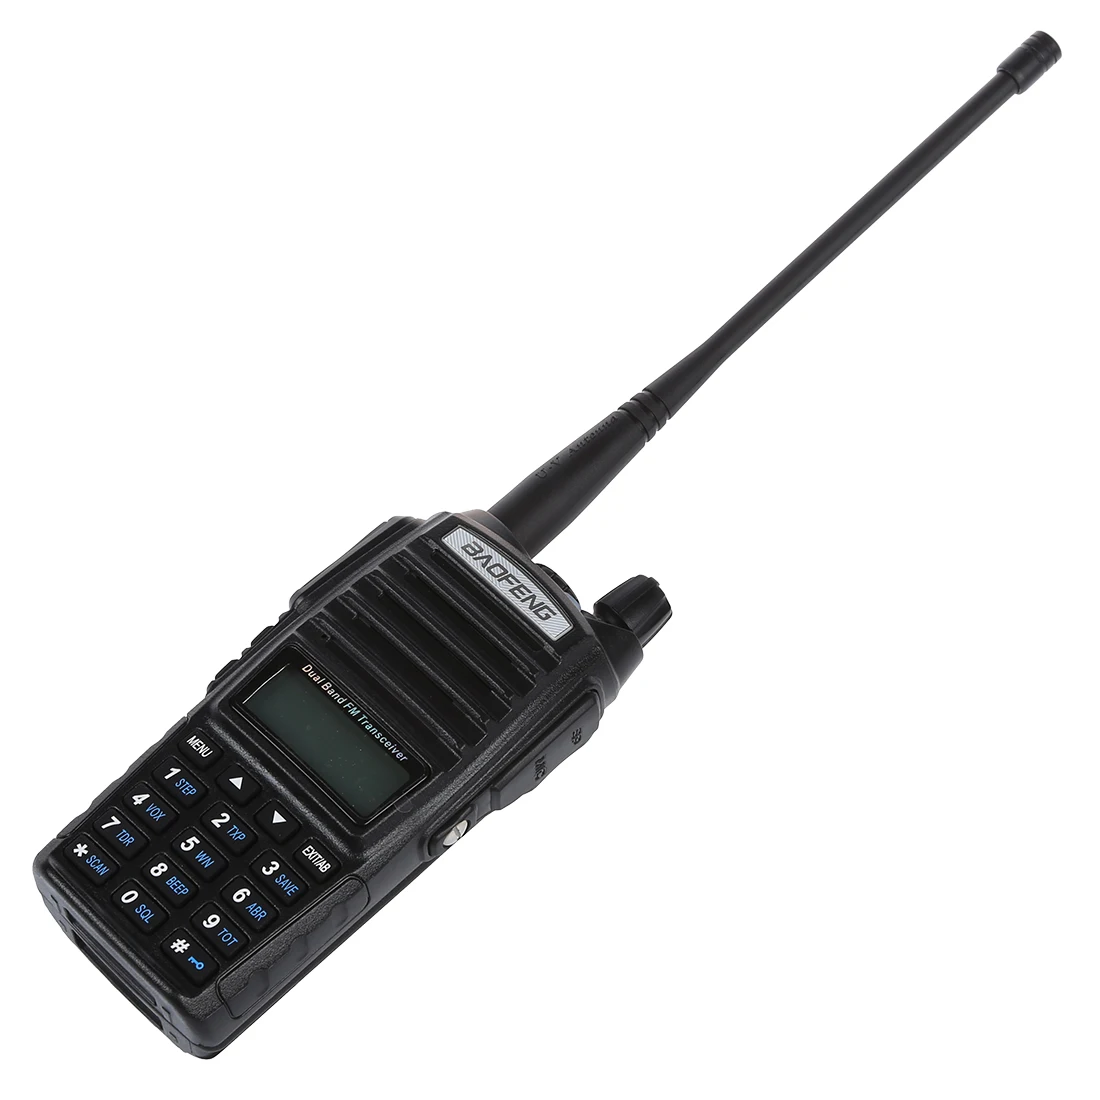 2 шт. из MOOL Baofeng UV-82L VHF/UHF Хэм двунаправленный портативная рация-Walkie с 18 см Atenna и 3000mA батарея, черный